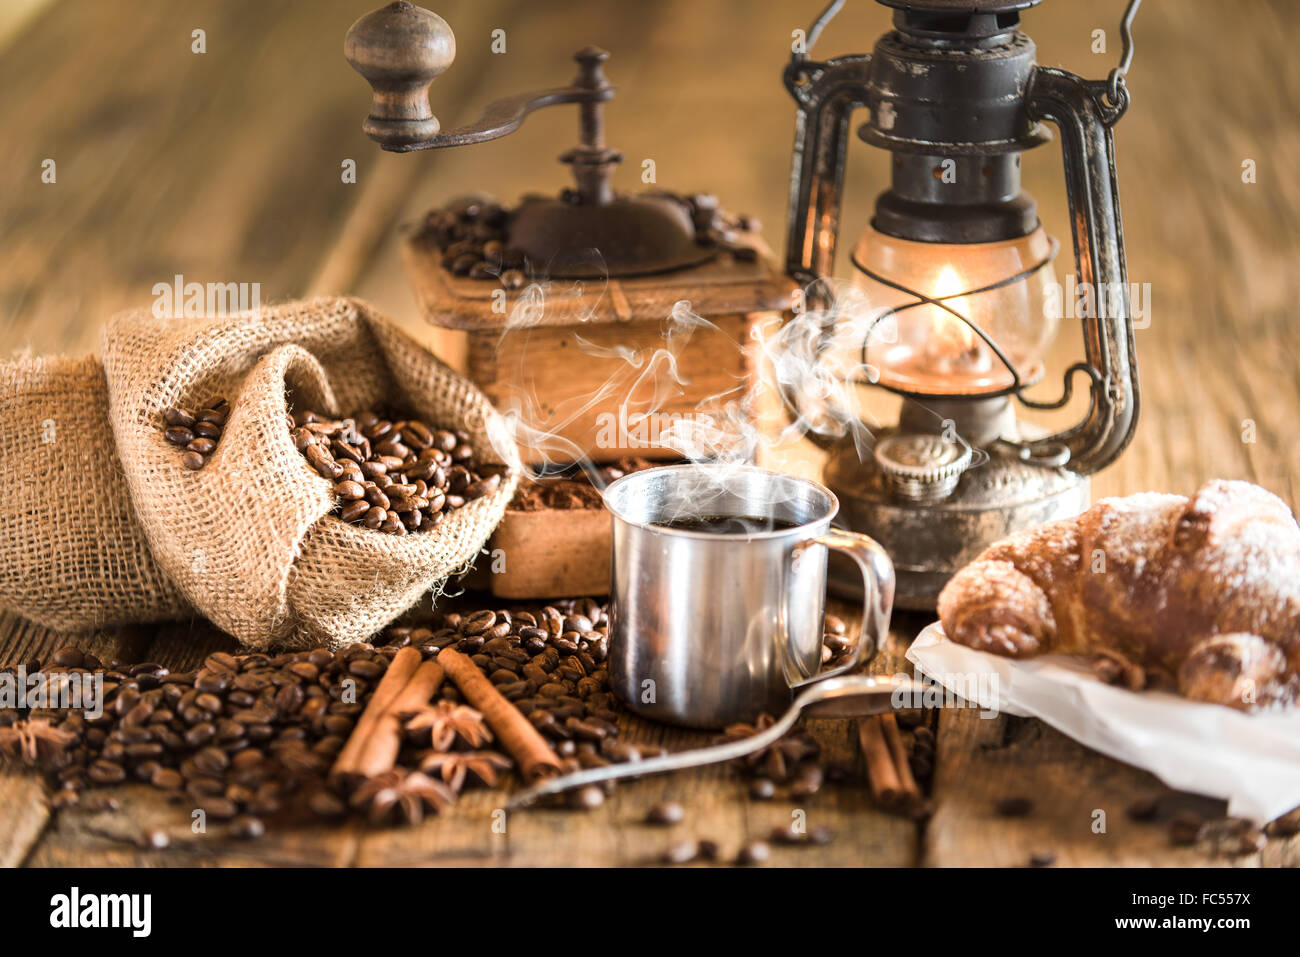 Les petit-déjeuner italien composé de café et de croissants, sur une table en bois avec une lampe au kérosène. Banque D'Images